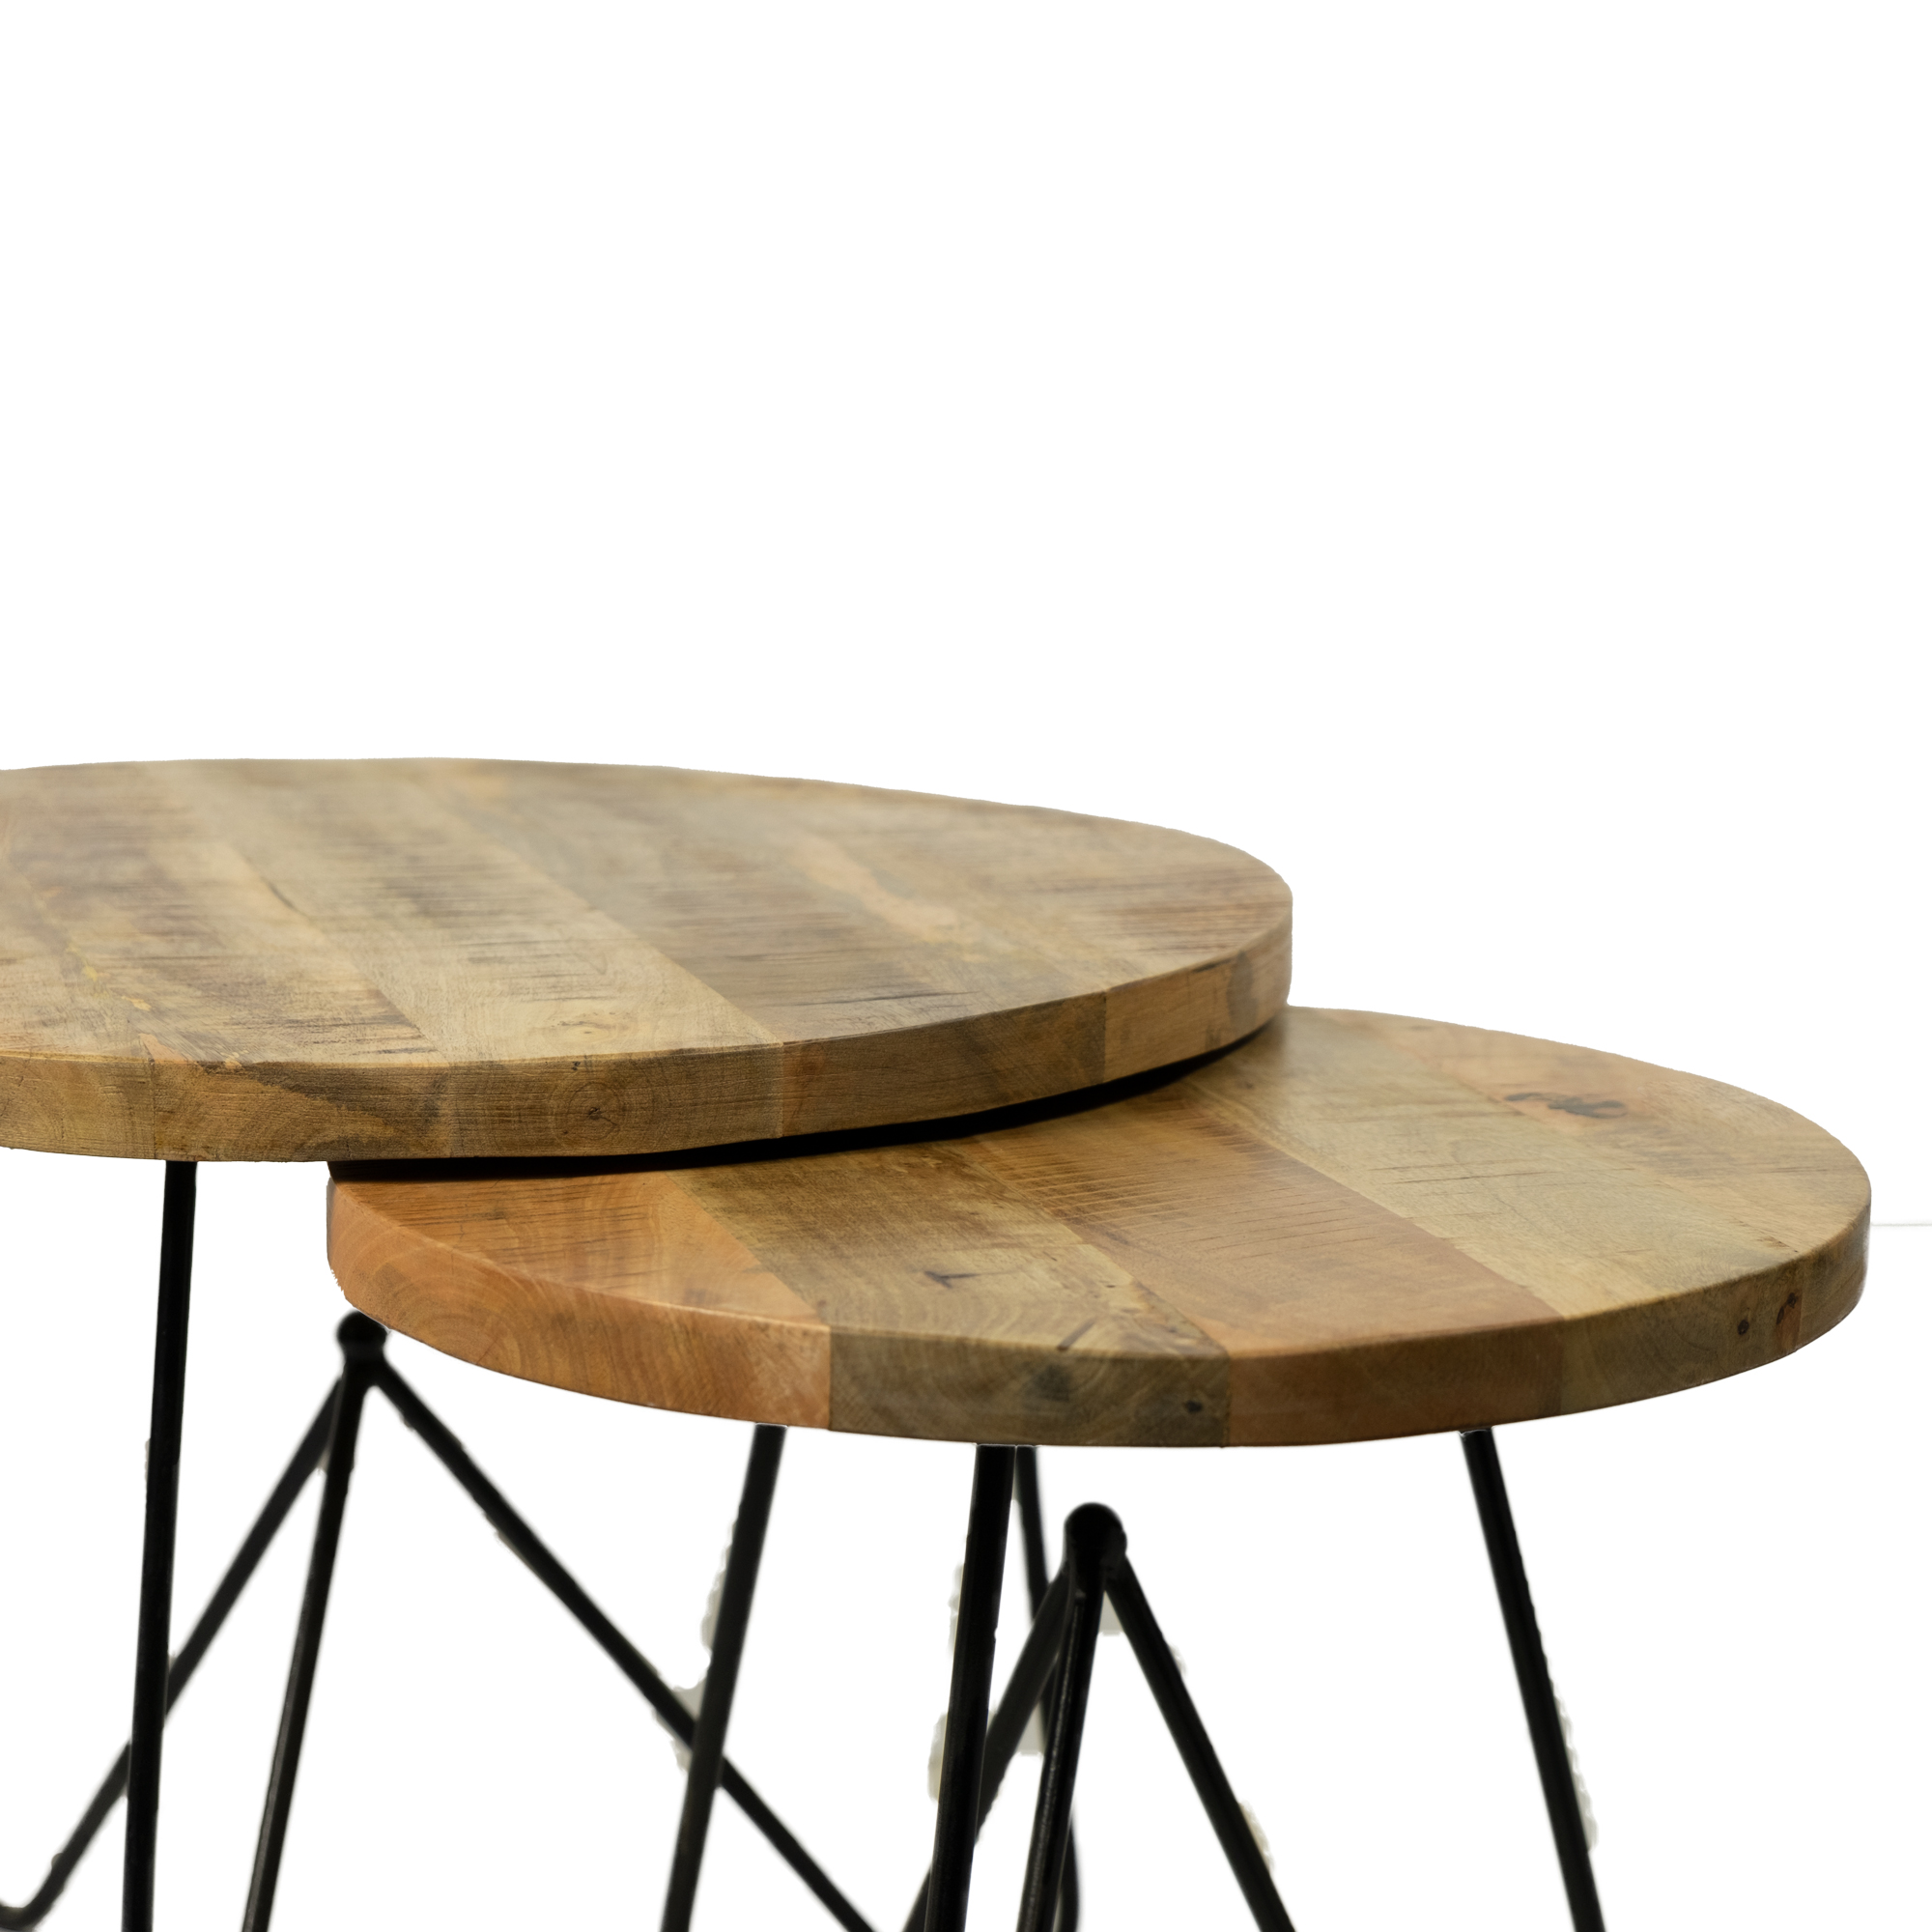 Bouwen op Zeg opzij span Ronde salontafel hout retro 60 cm doorsnee met metalen pootjes